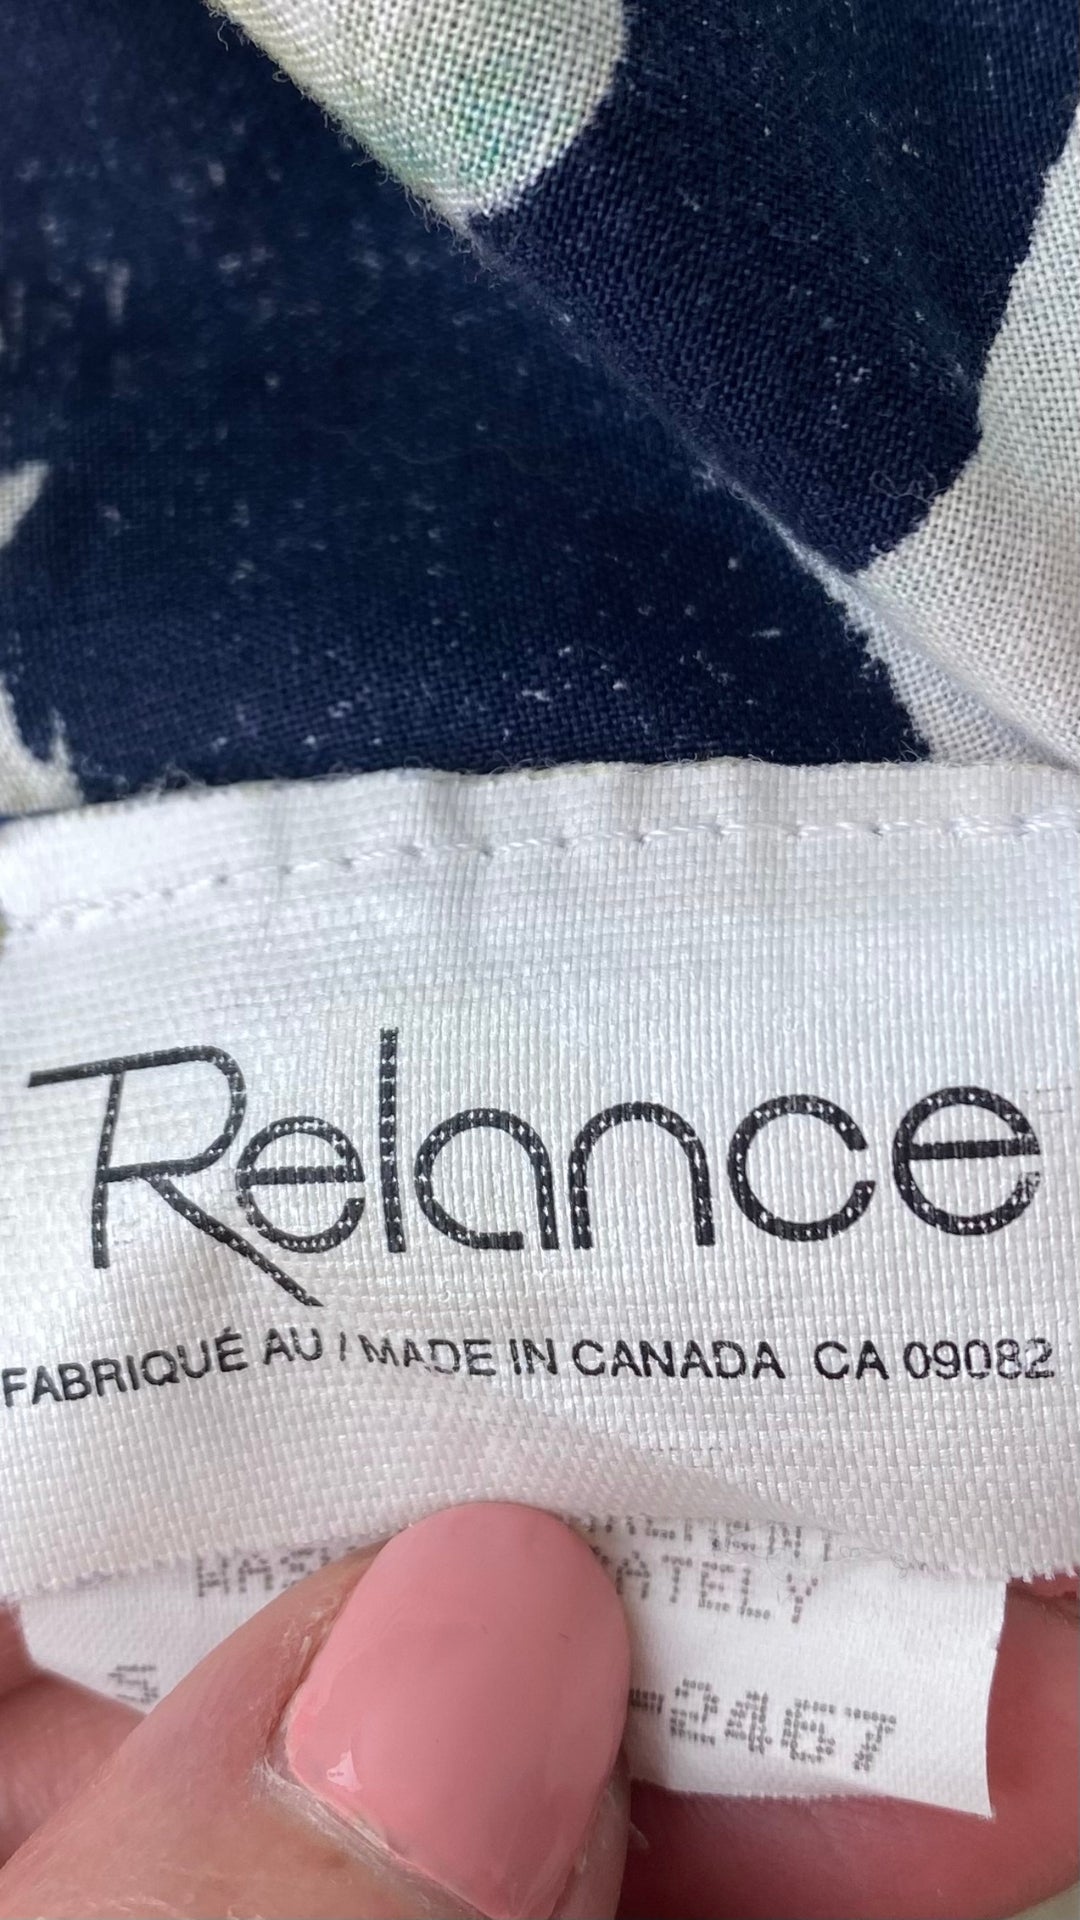 Robe vintage boutonnée à motifs de fleurs tropicales,  marque Relance, taille small, fabriquée au Canada. Vue de l'étiquette de marque.